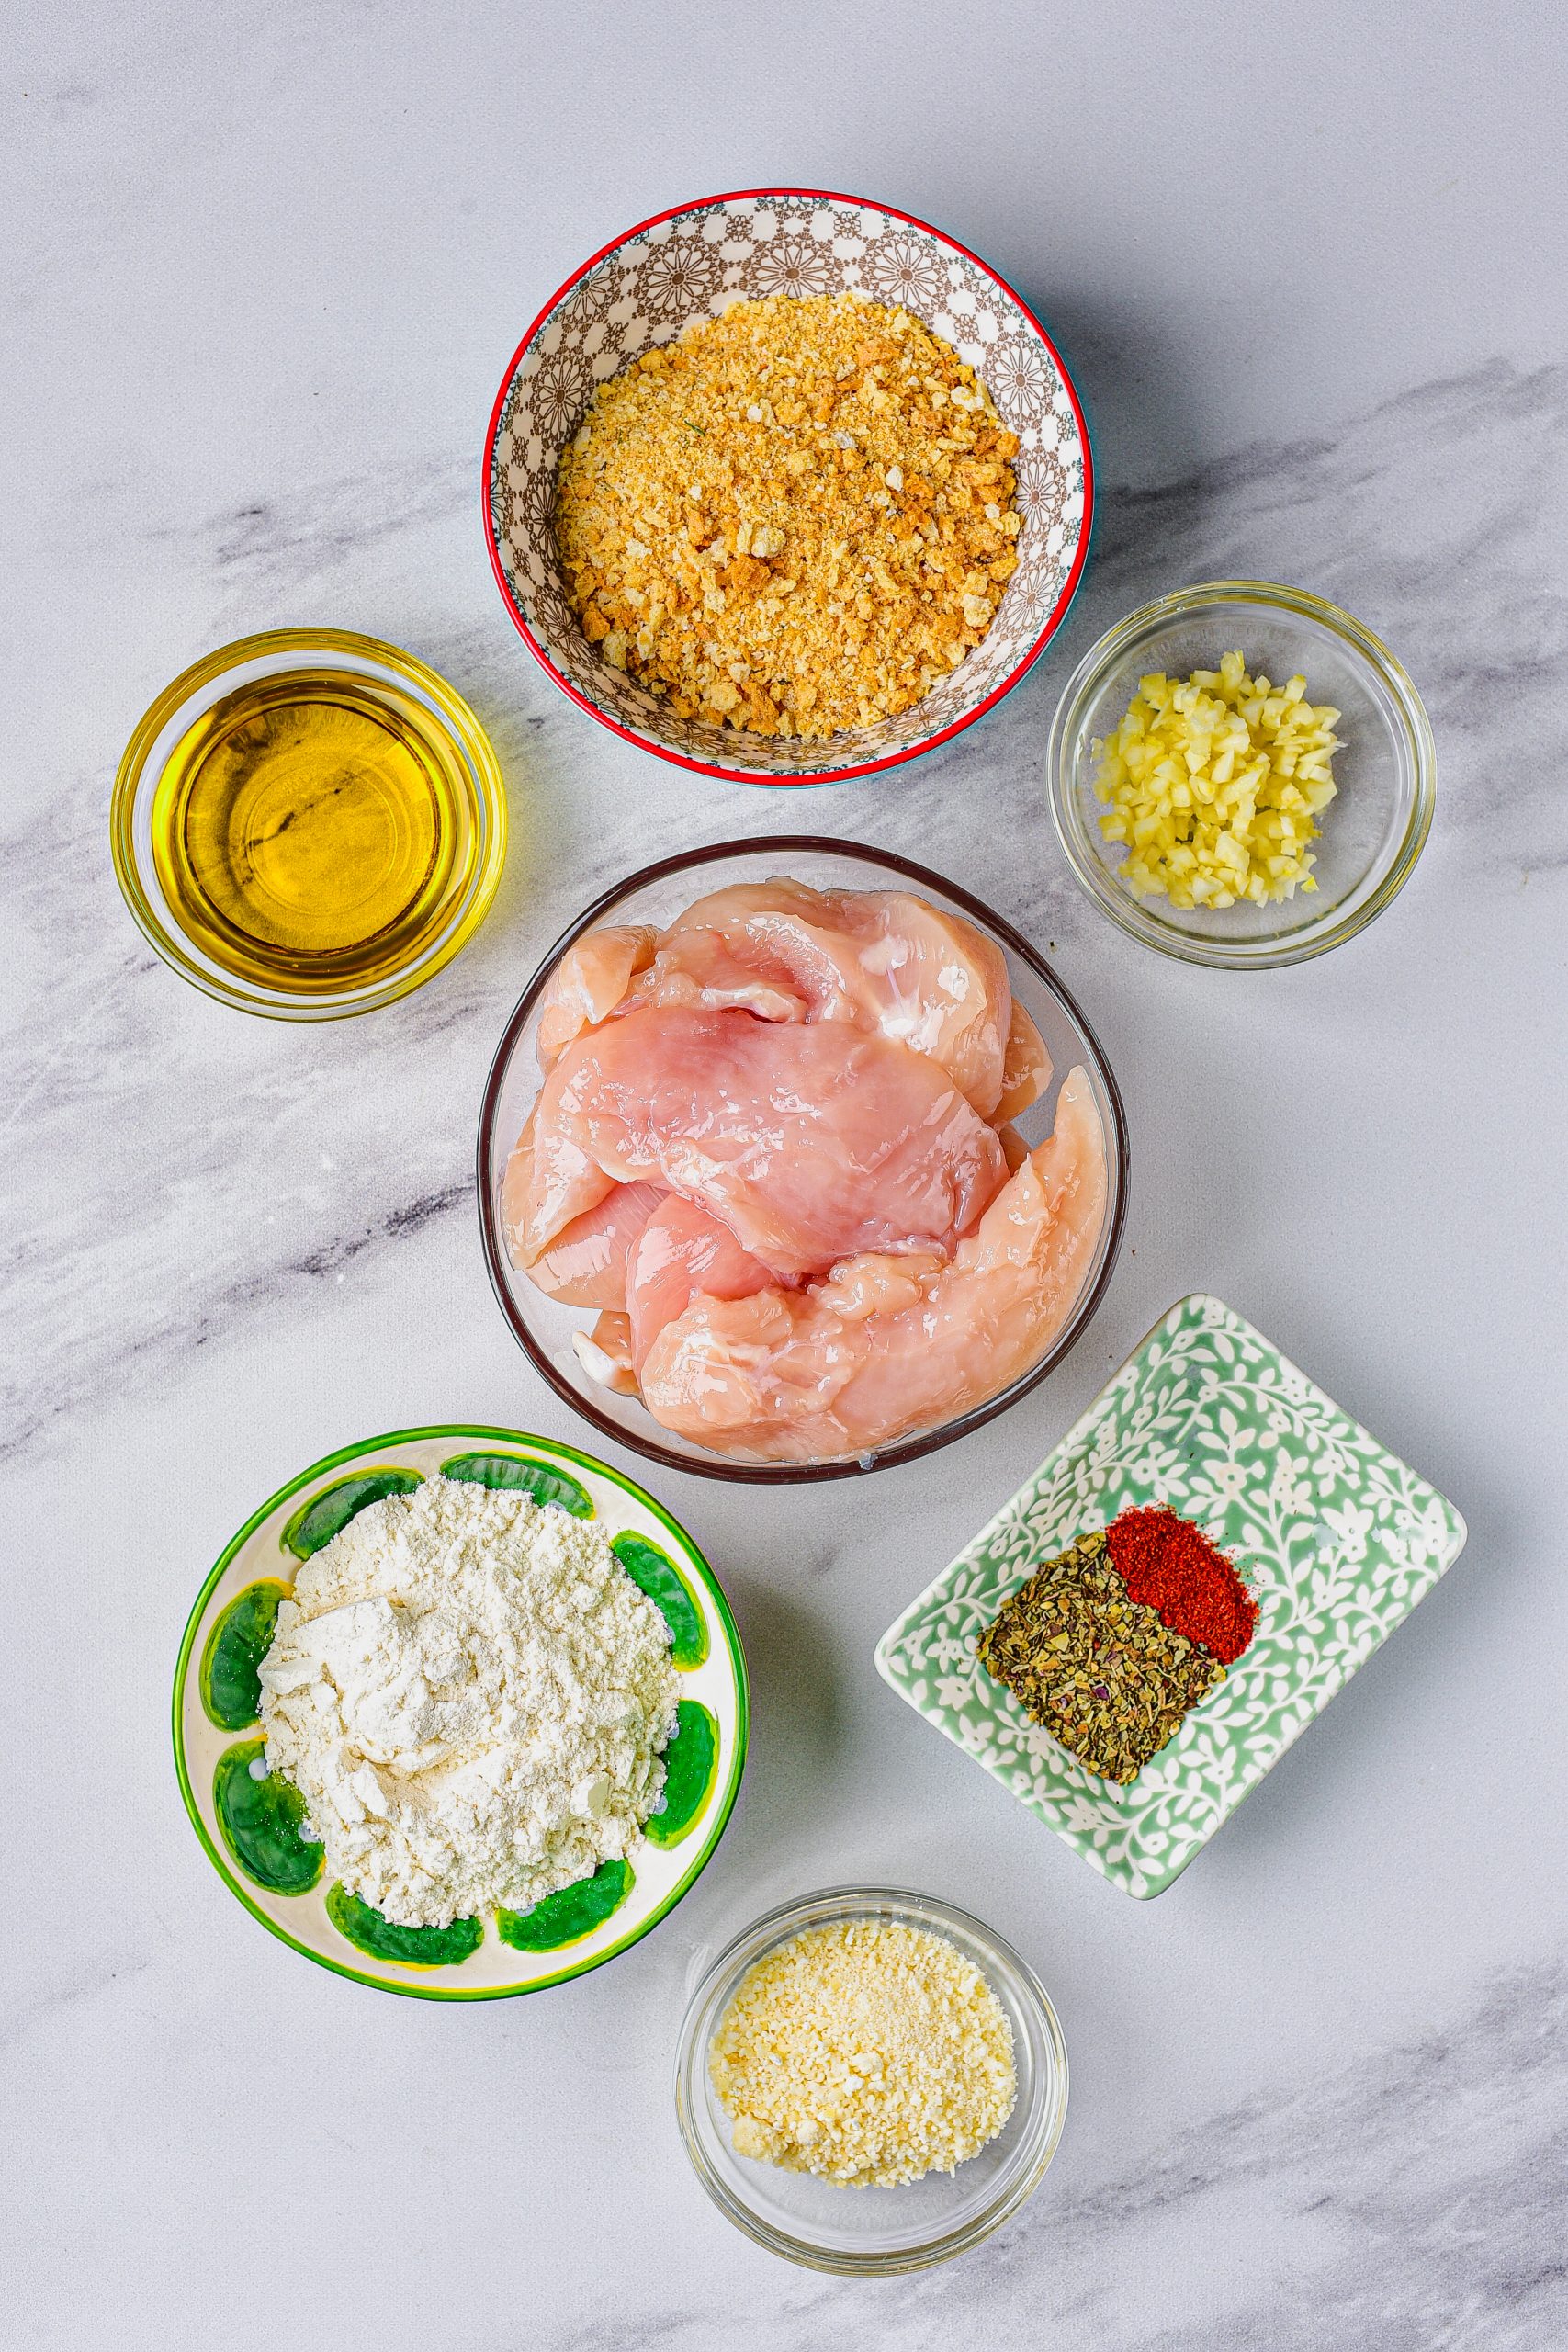 Parmesan-Crusted Air Fryer Chicken Tenders ingredients